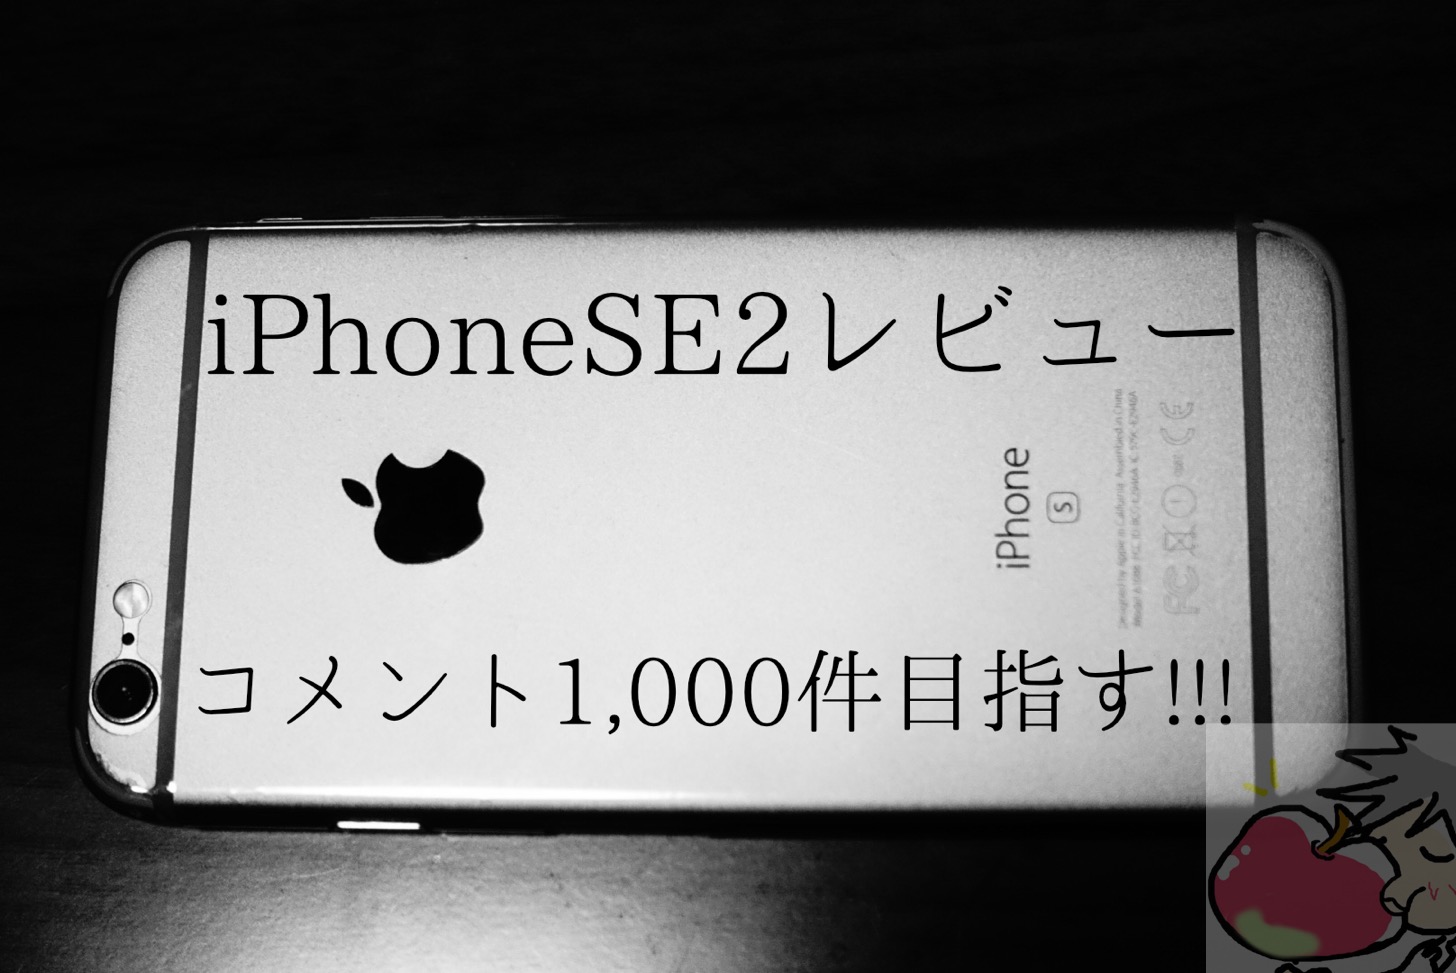 日本一のiPhoneSE2レビュー (予定)コメント1000件目指す